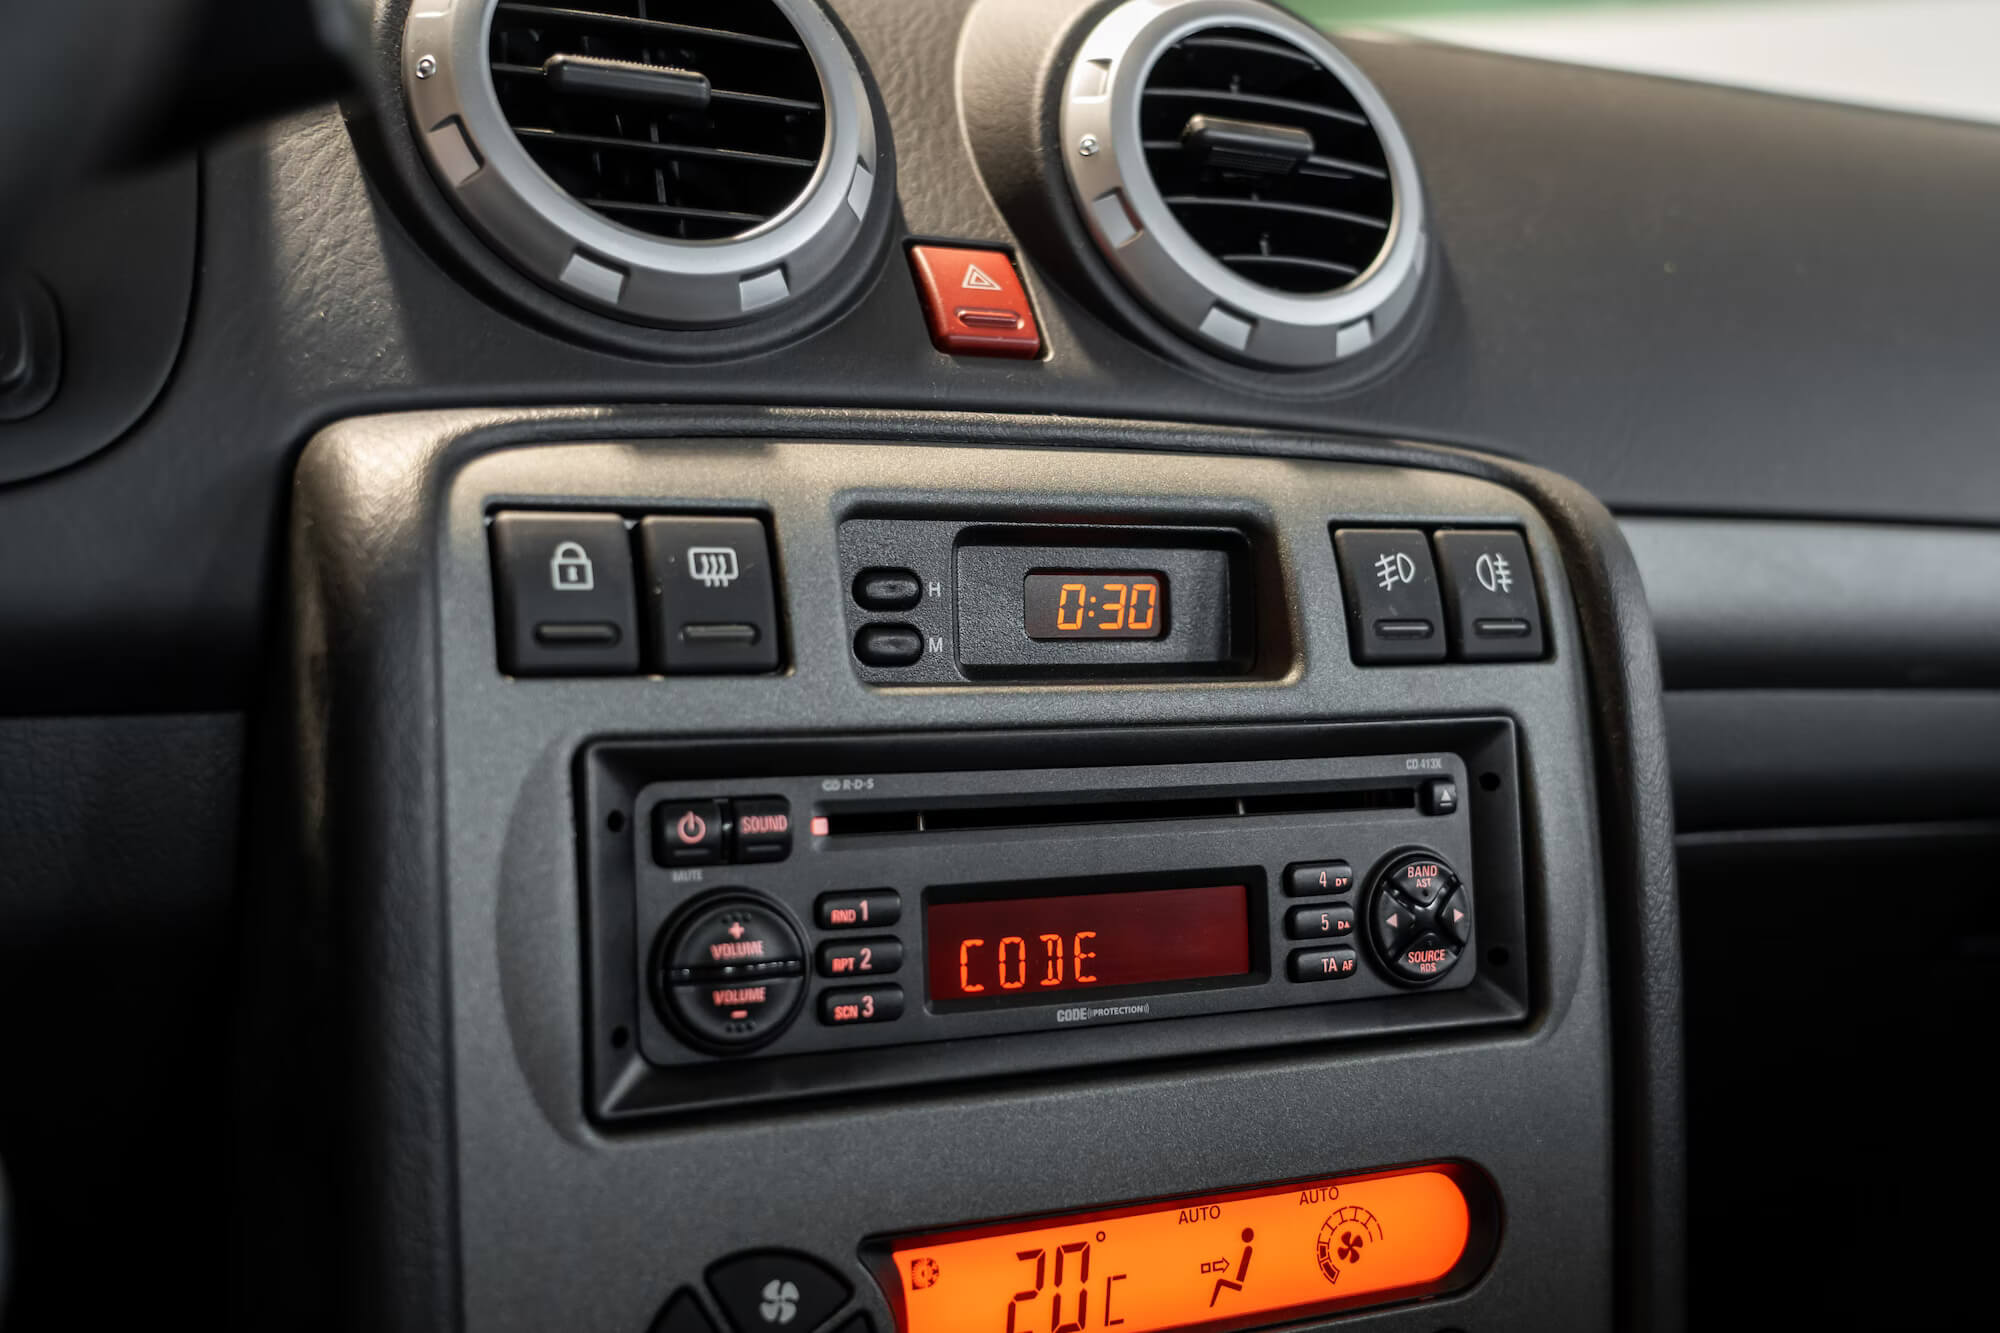 MG ZS 180 interior pormenor rádio e consola central